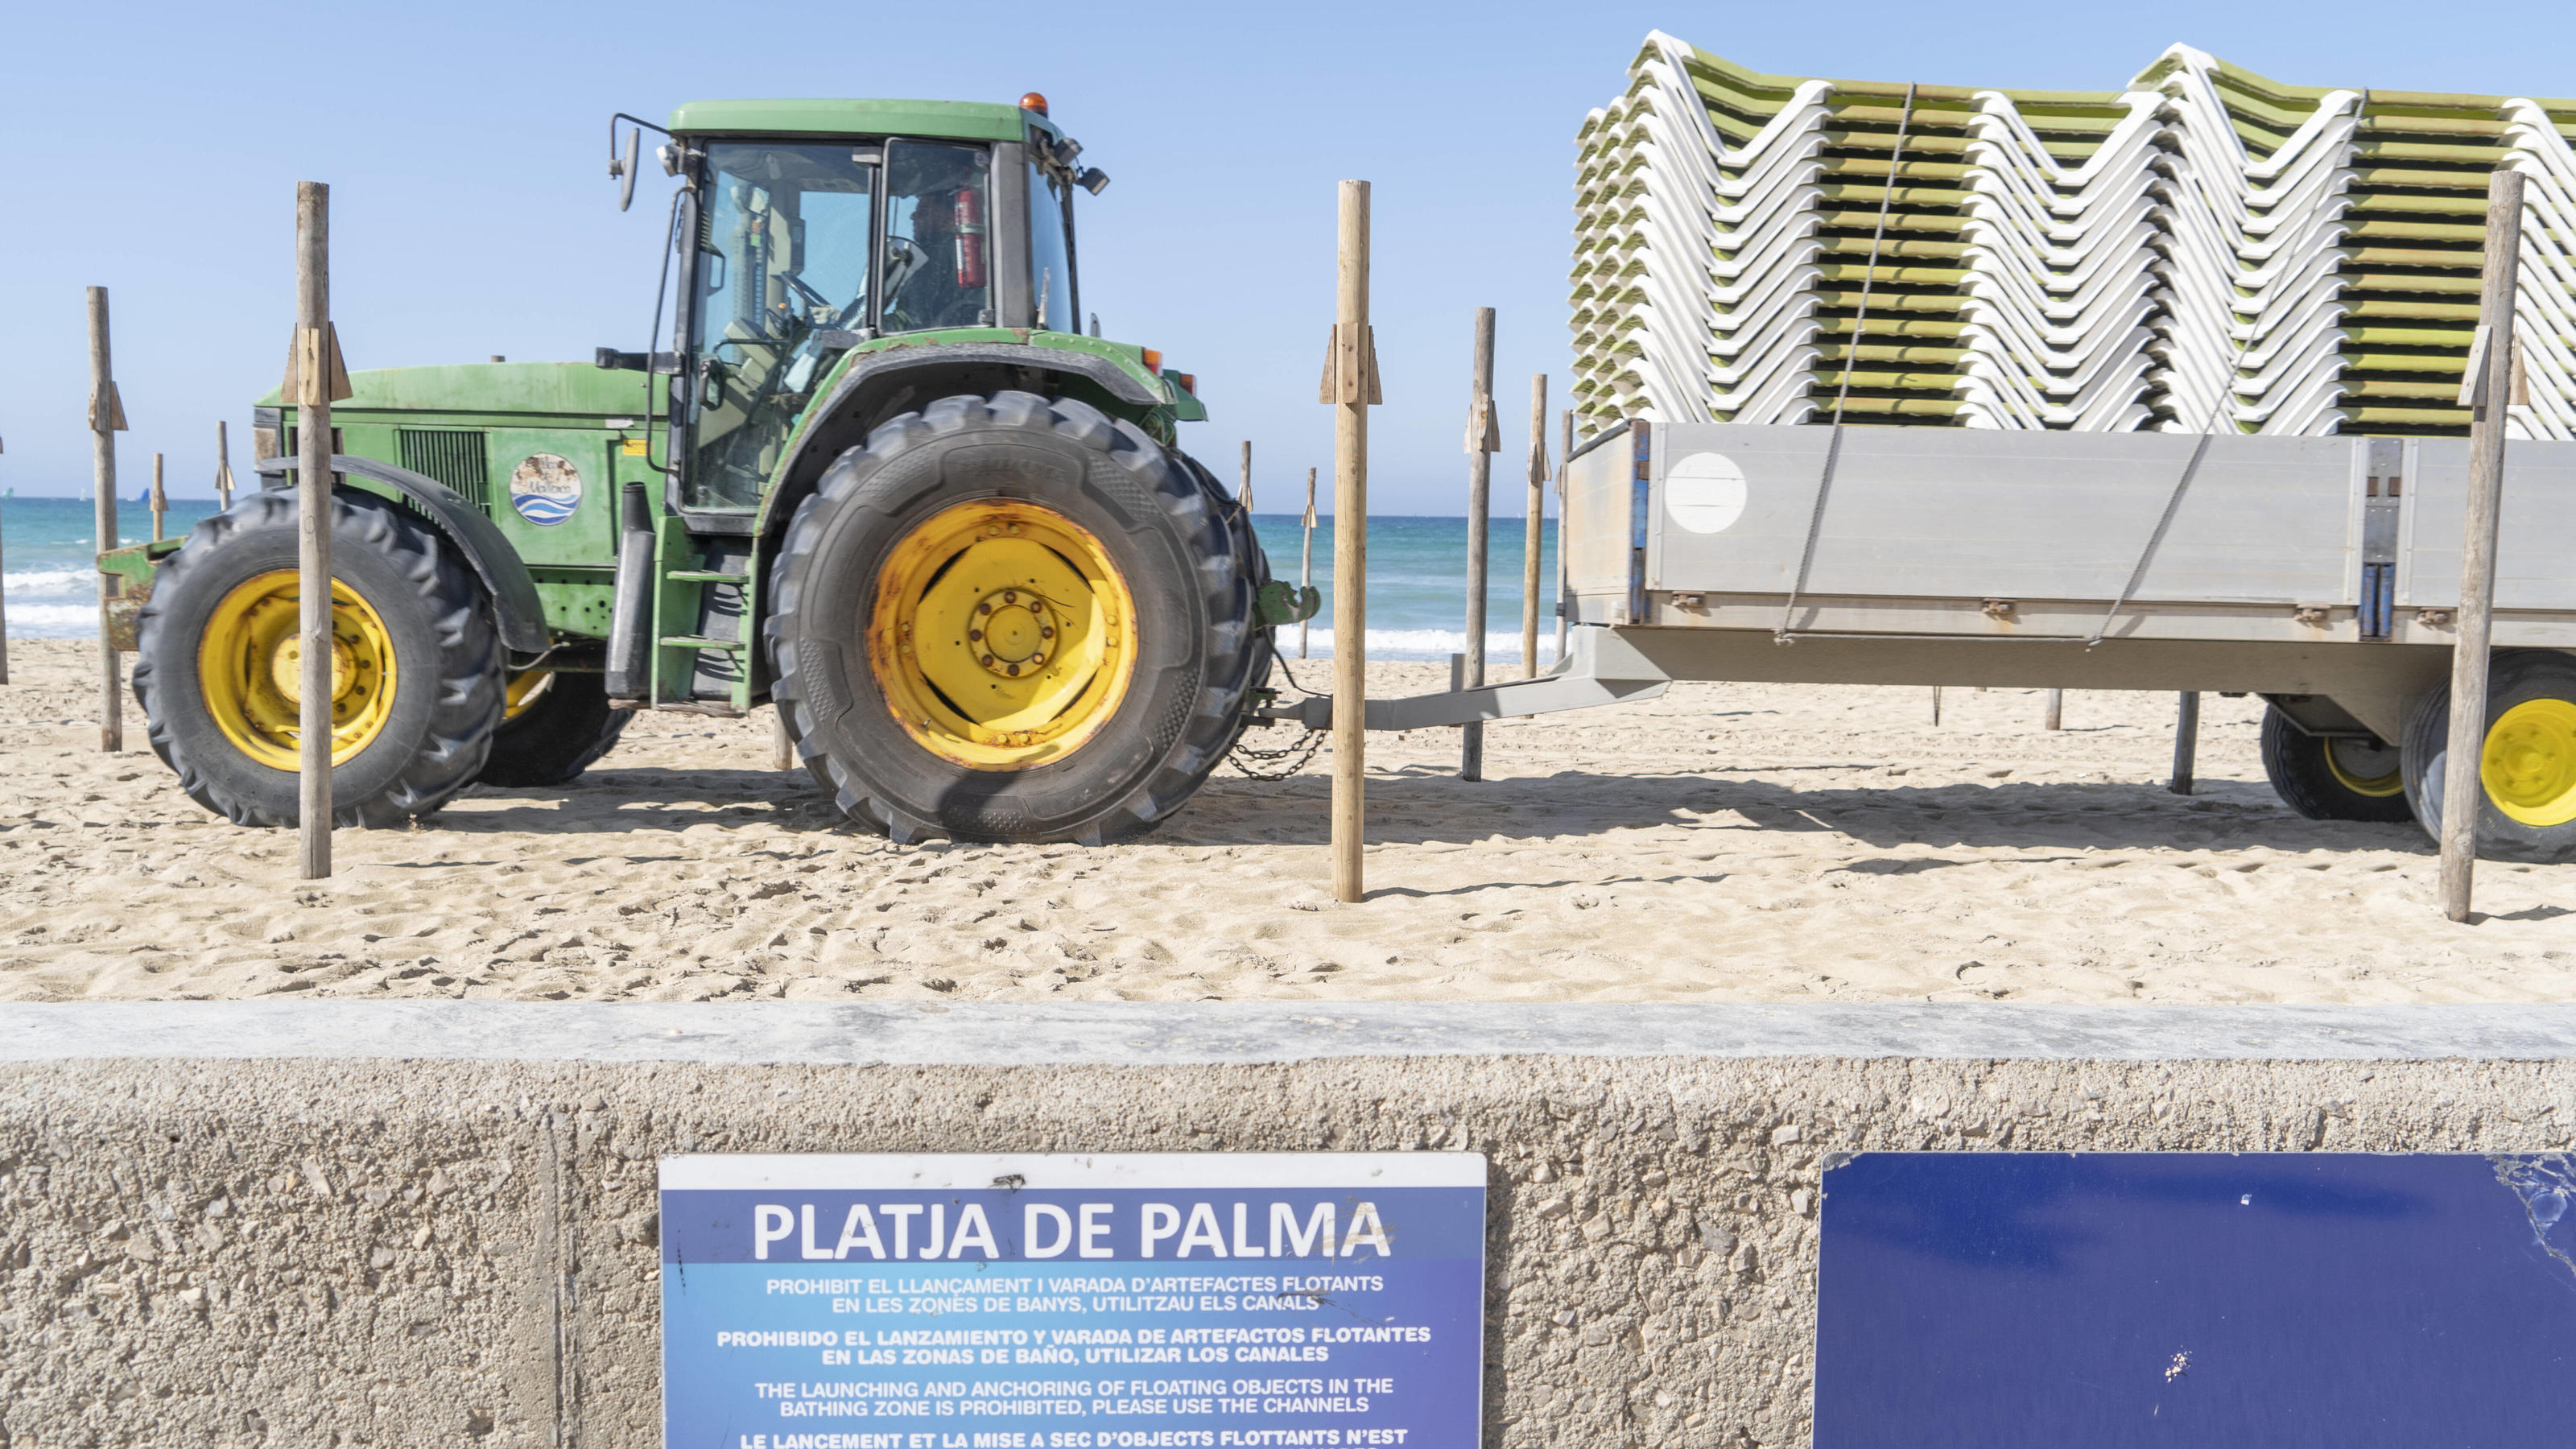  Eindrücke vom Strand in Playa de Palma auf der Insel Mallorca zum Saisonstart 2022 kurz vor den Osterferien - Der Aufbau der Strandliegen hat begonnenEindrücke vom Strand in Playa de Palma auf der Insel Mallorca zum Saisonstart 2022 kurz vor den Ost